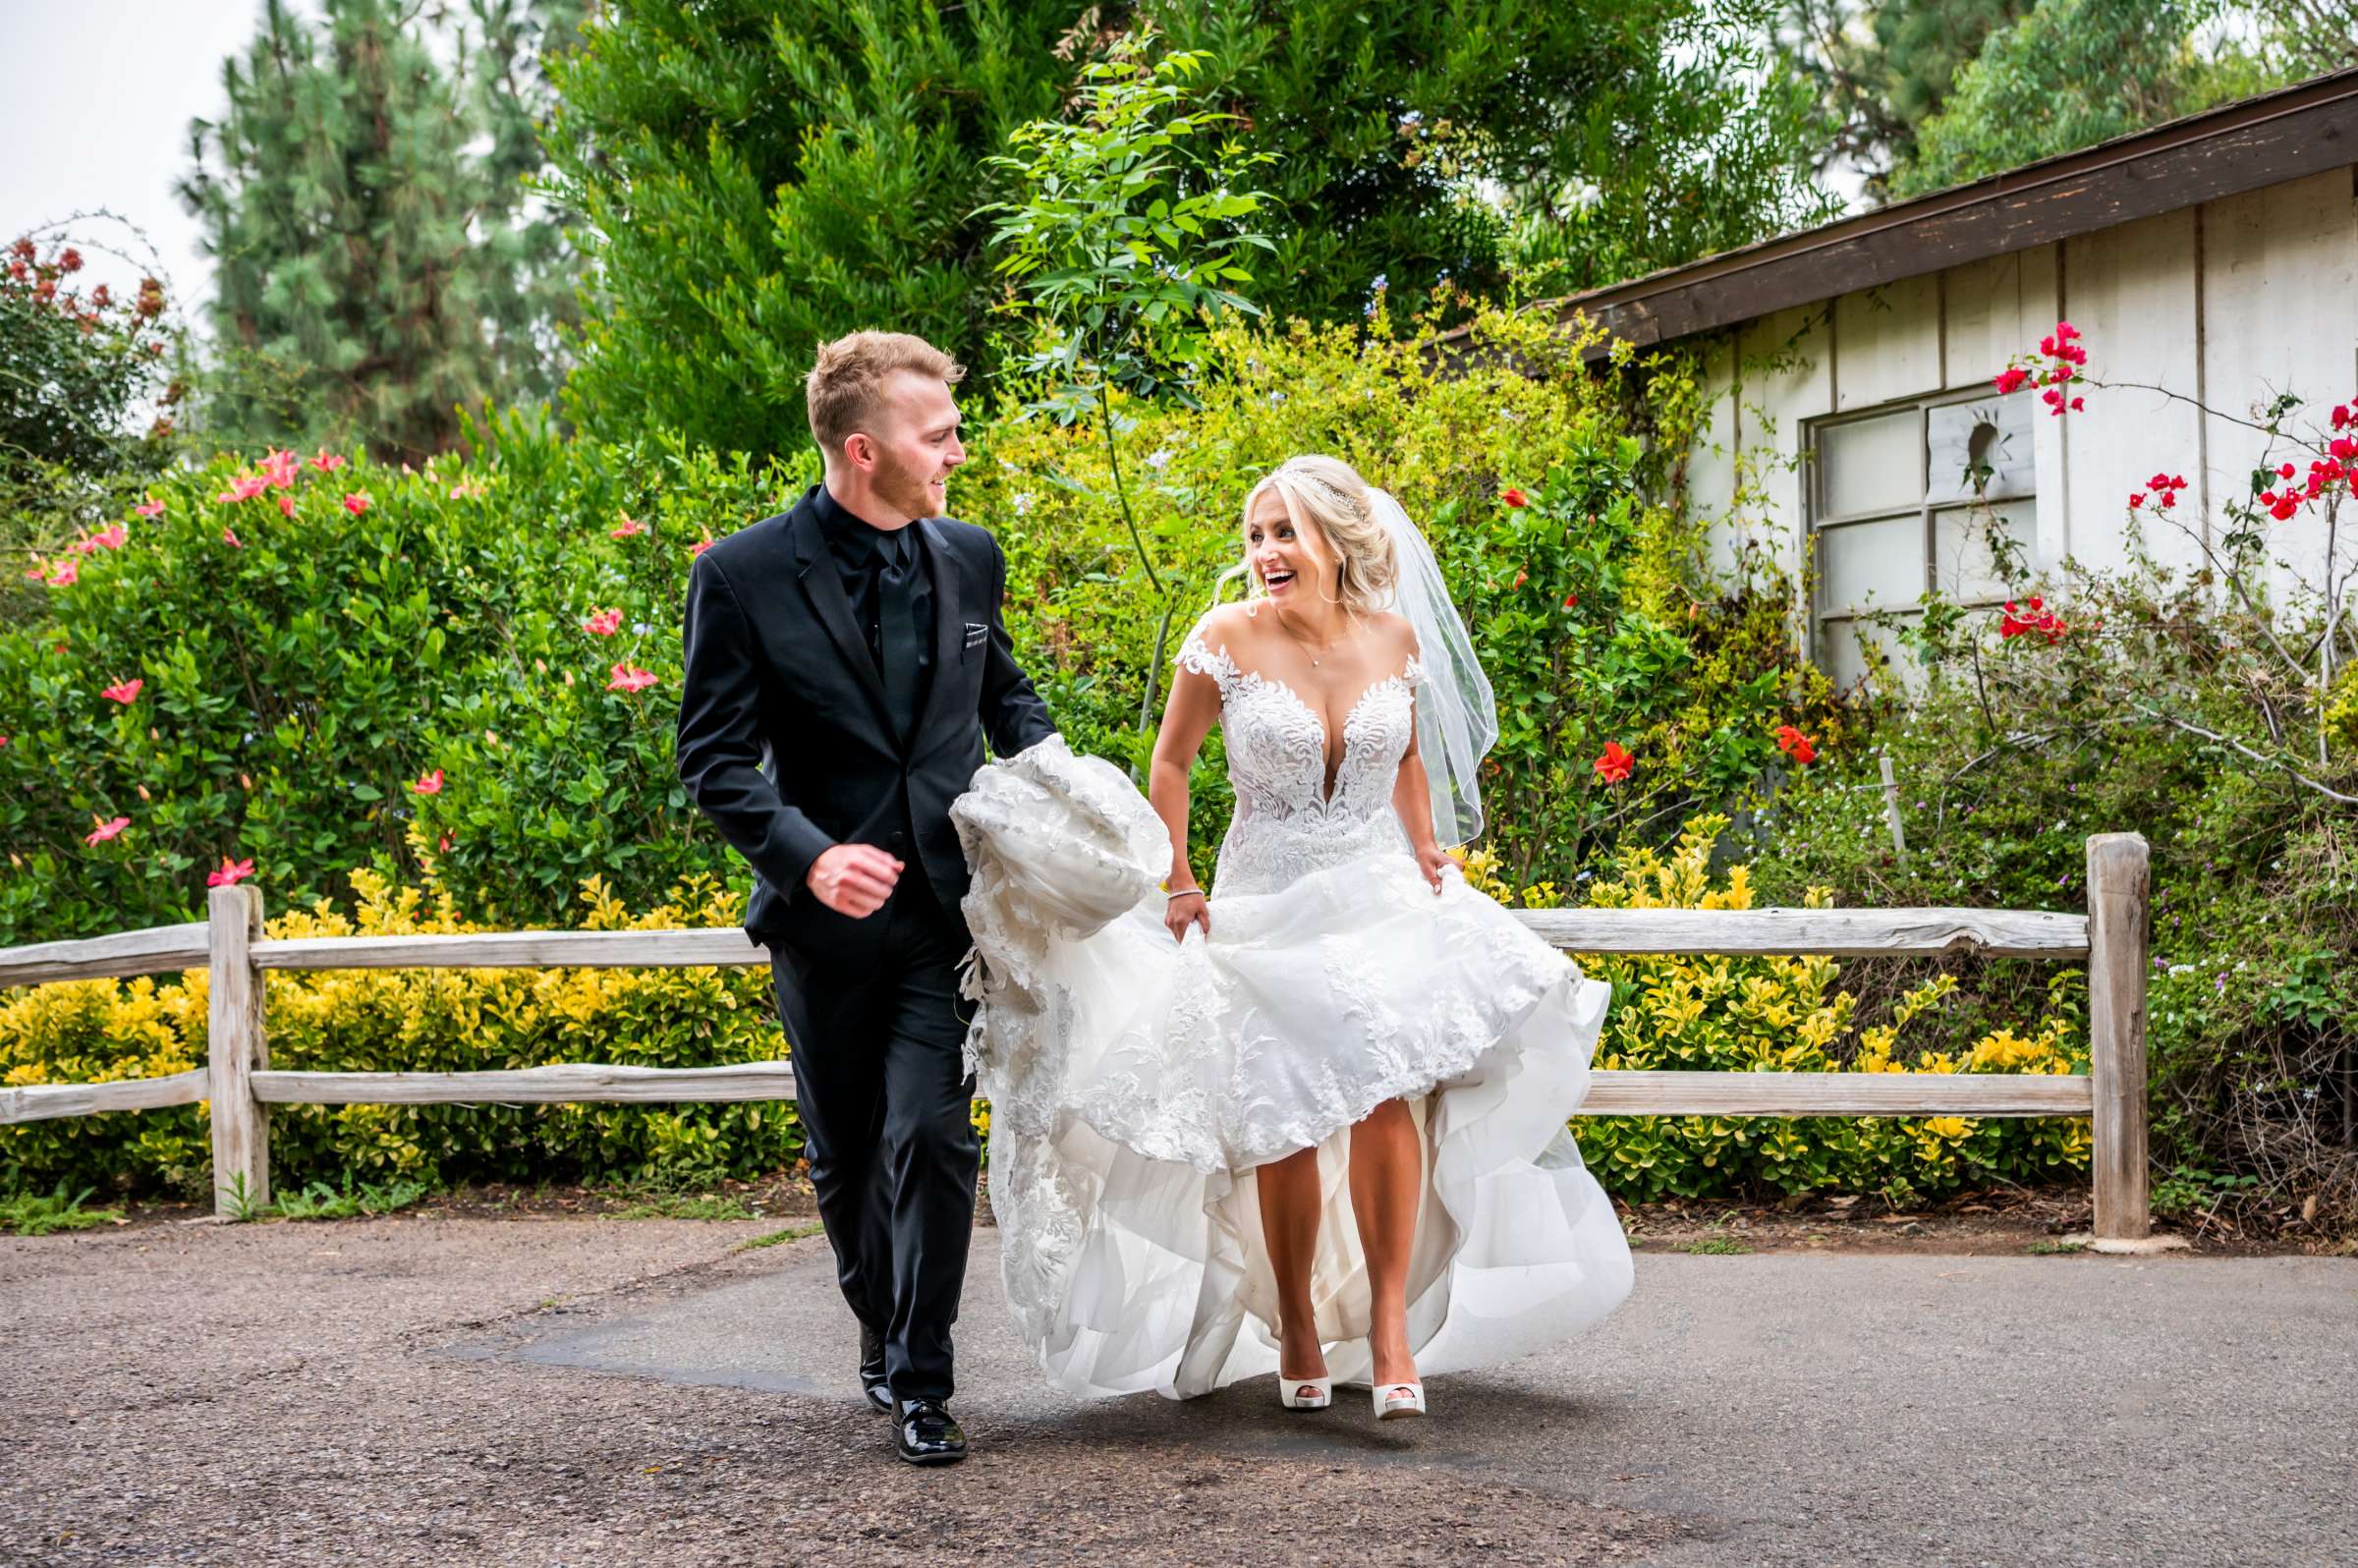 Green Gables Wedding Estate Wedding, Tiffanie and Daniel Wedding Photo #18 by True Photography